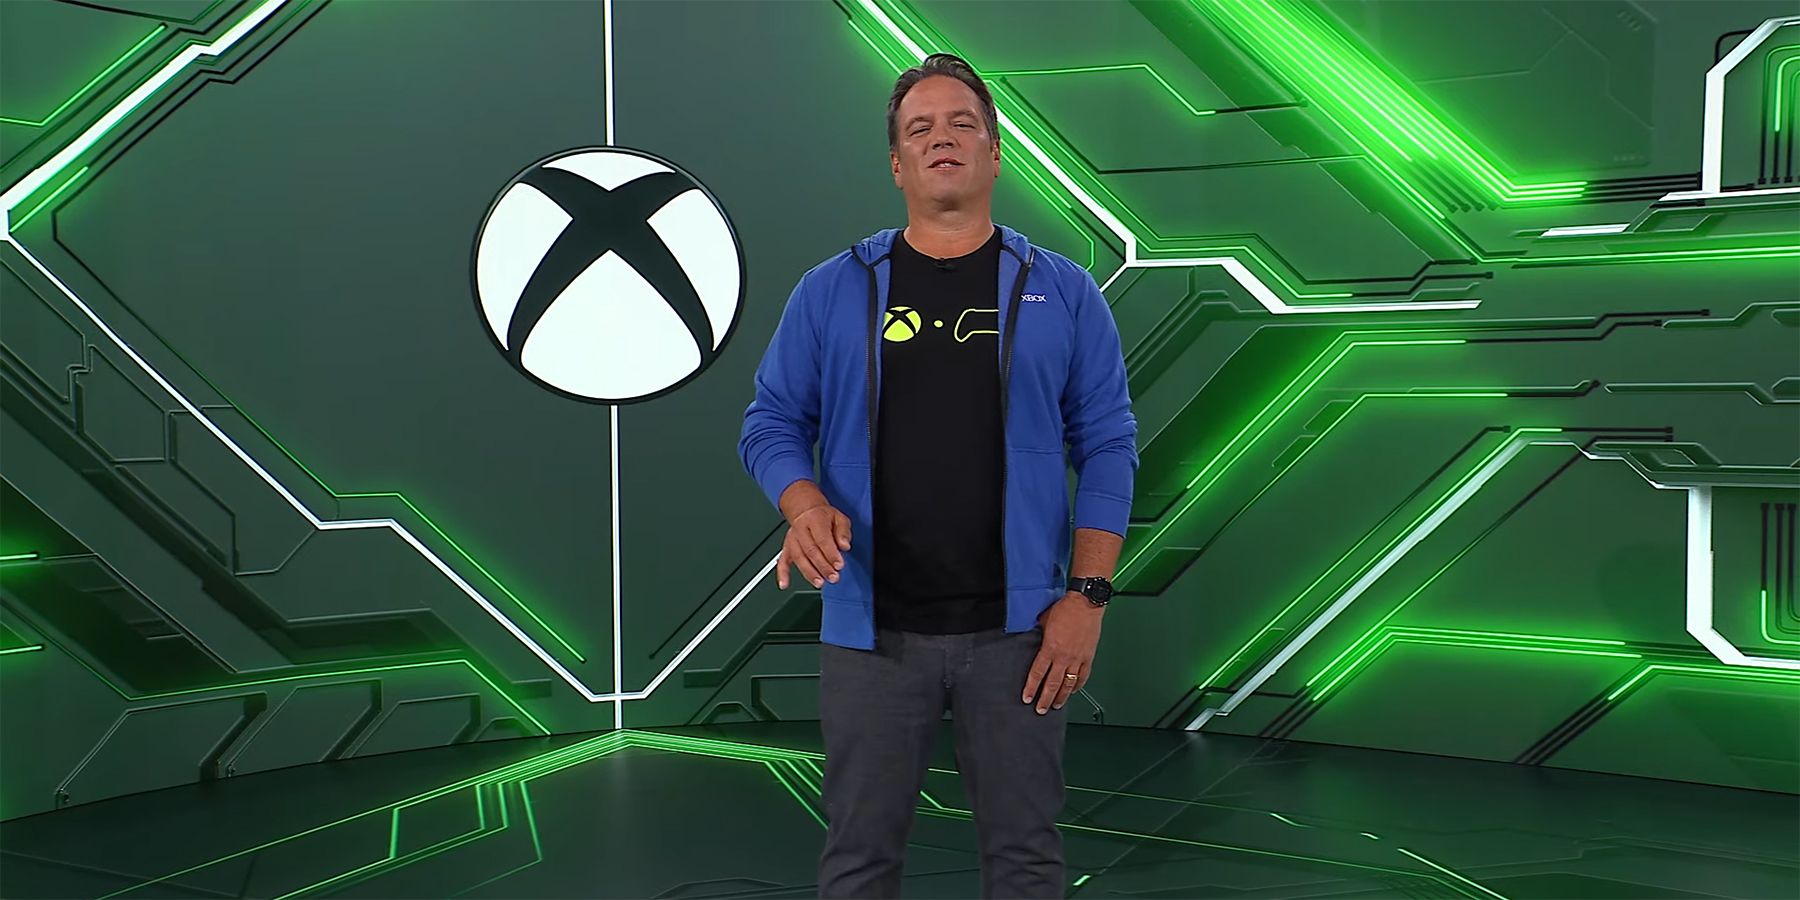 Xbox legger til nye tilgjengelighetsfunksjoner